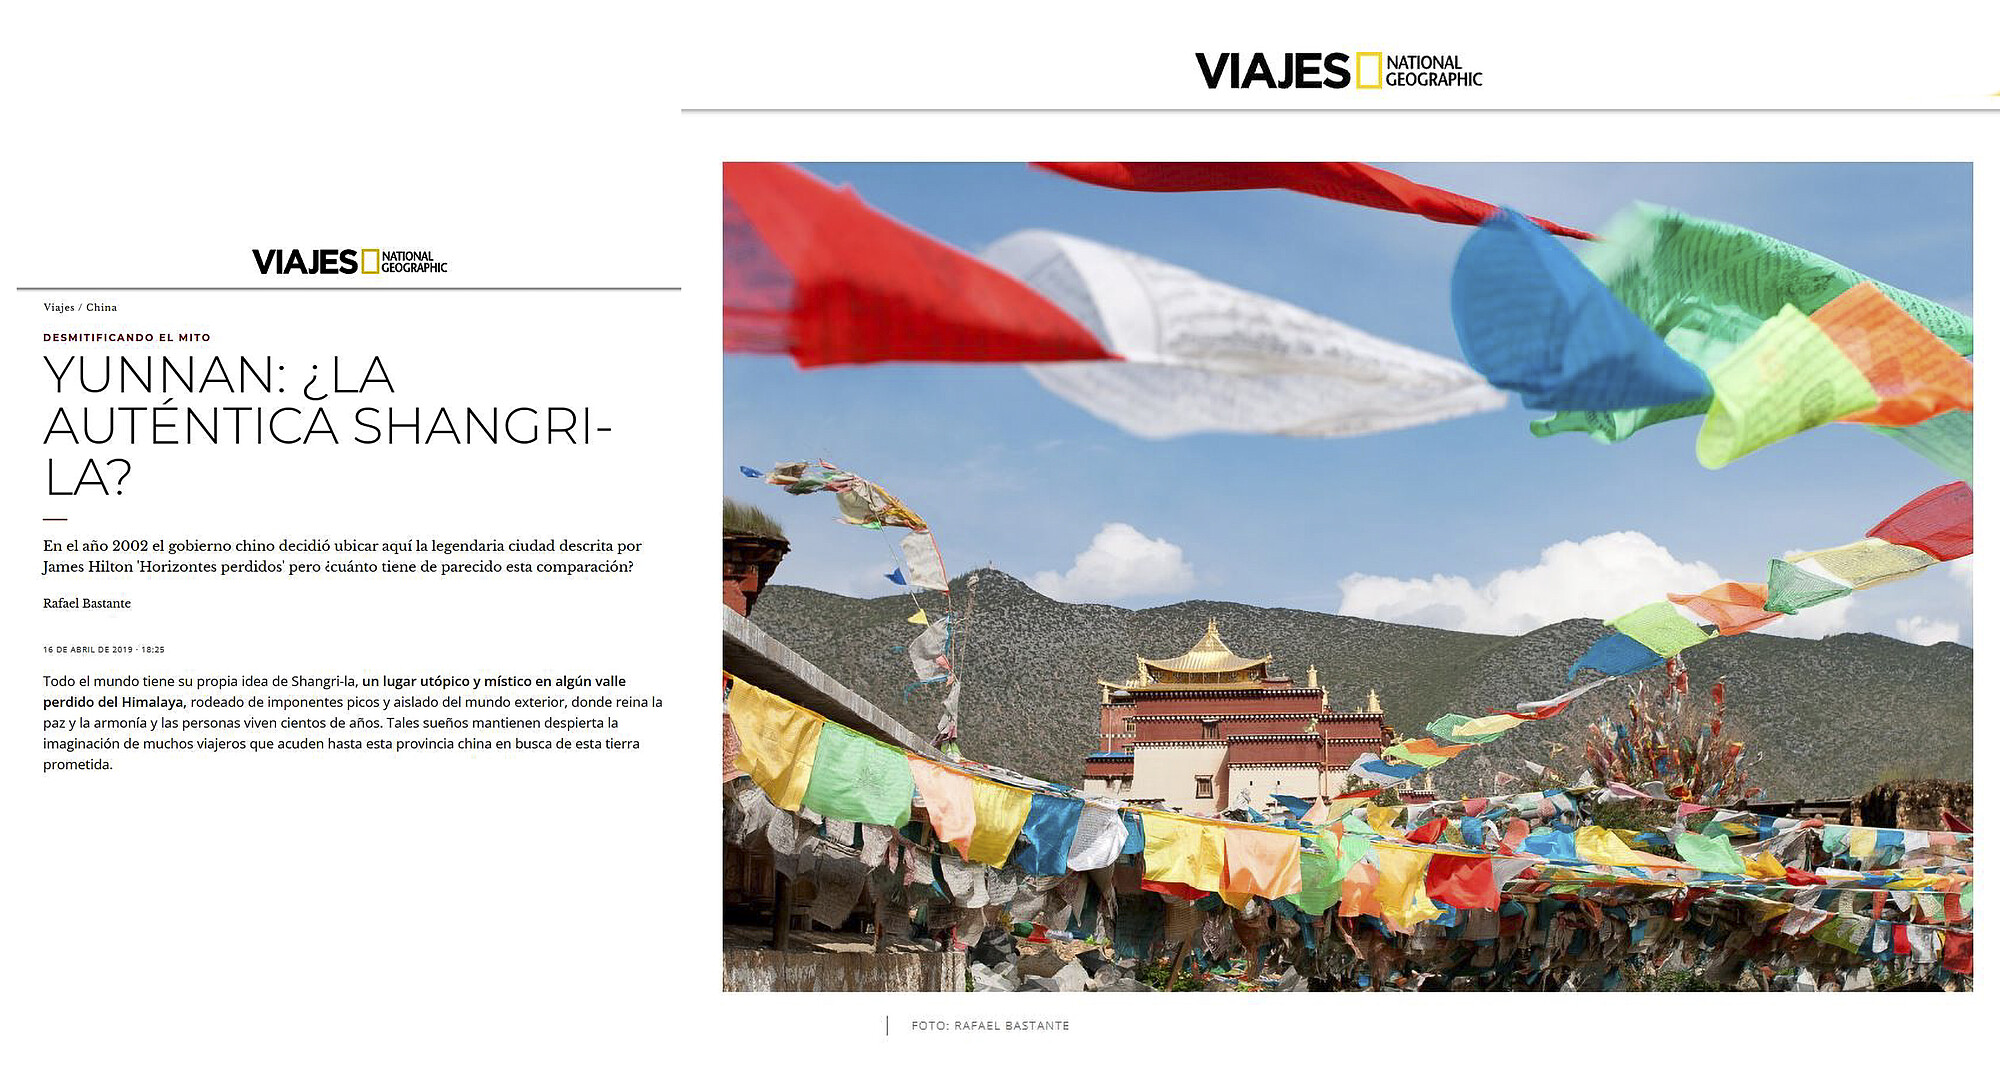 Yunnan: ¿La auténtica Shangri-La?